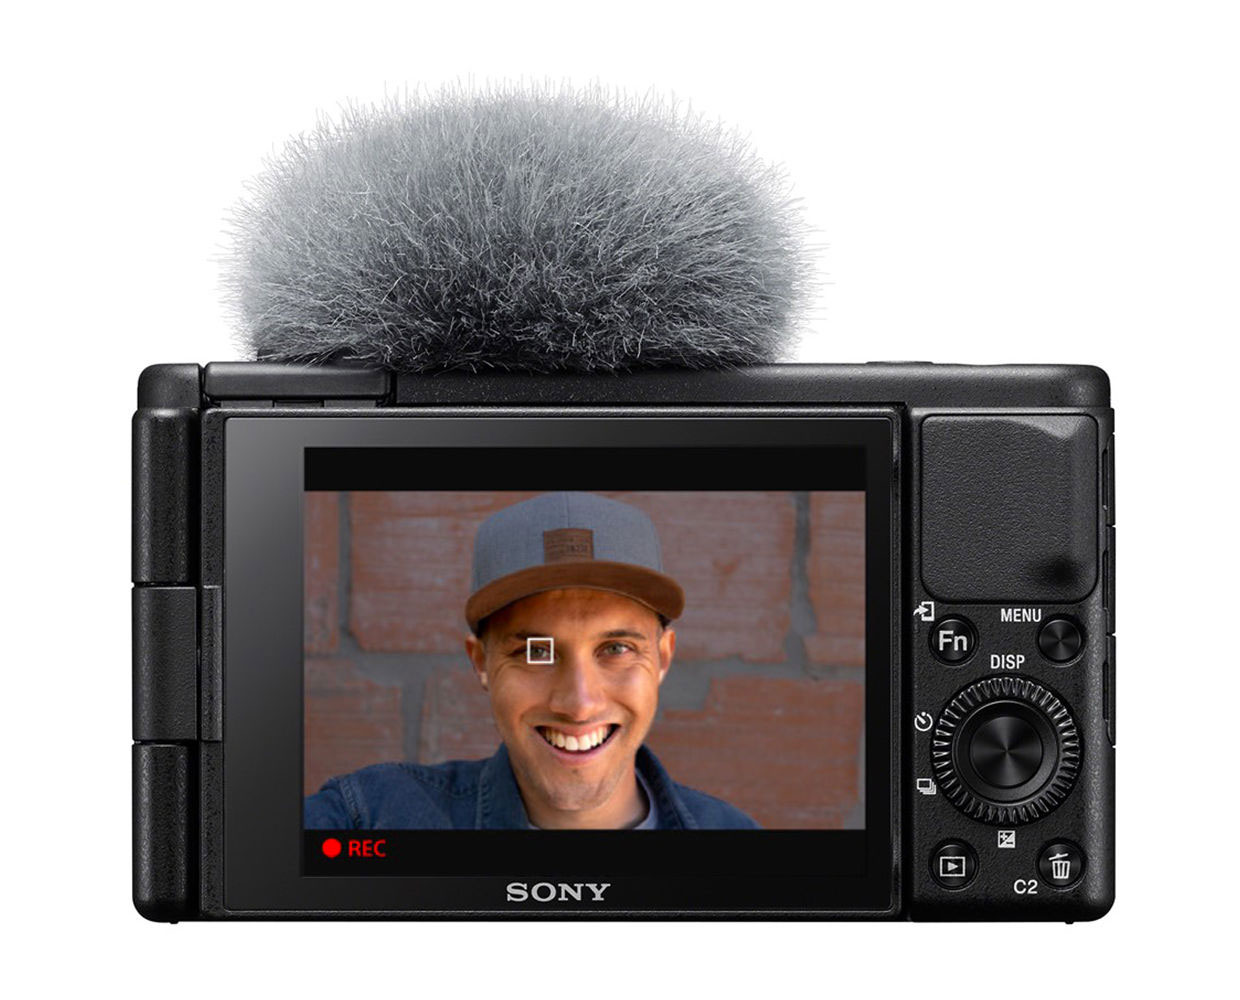 Sony ZV-1 Vlogging Camera